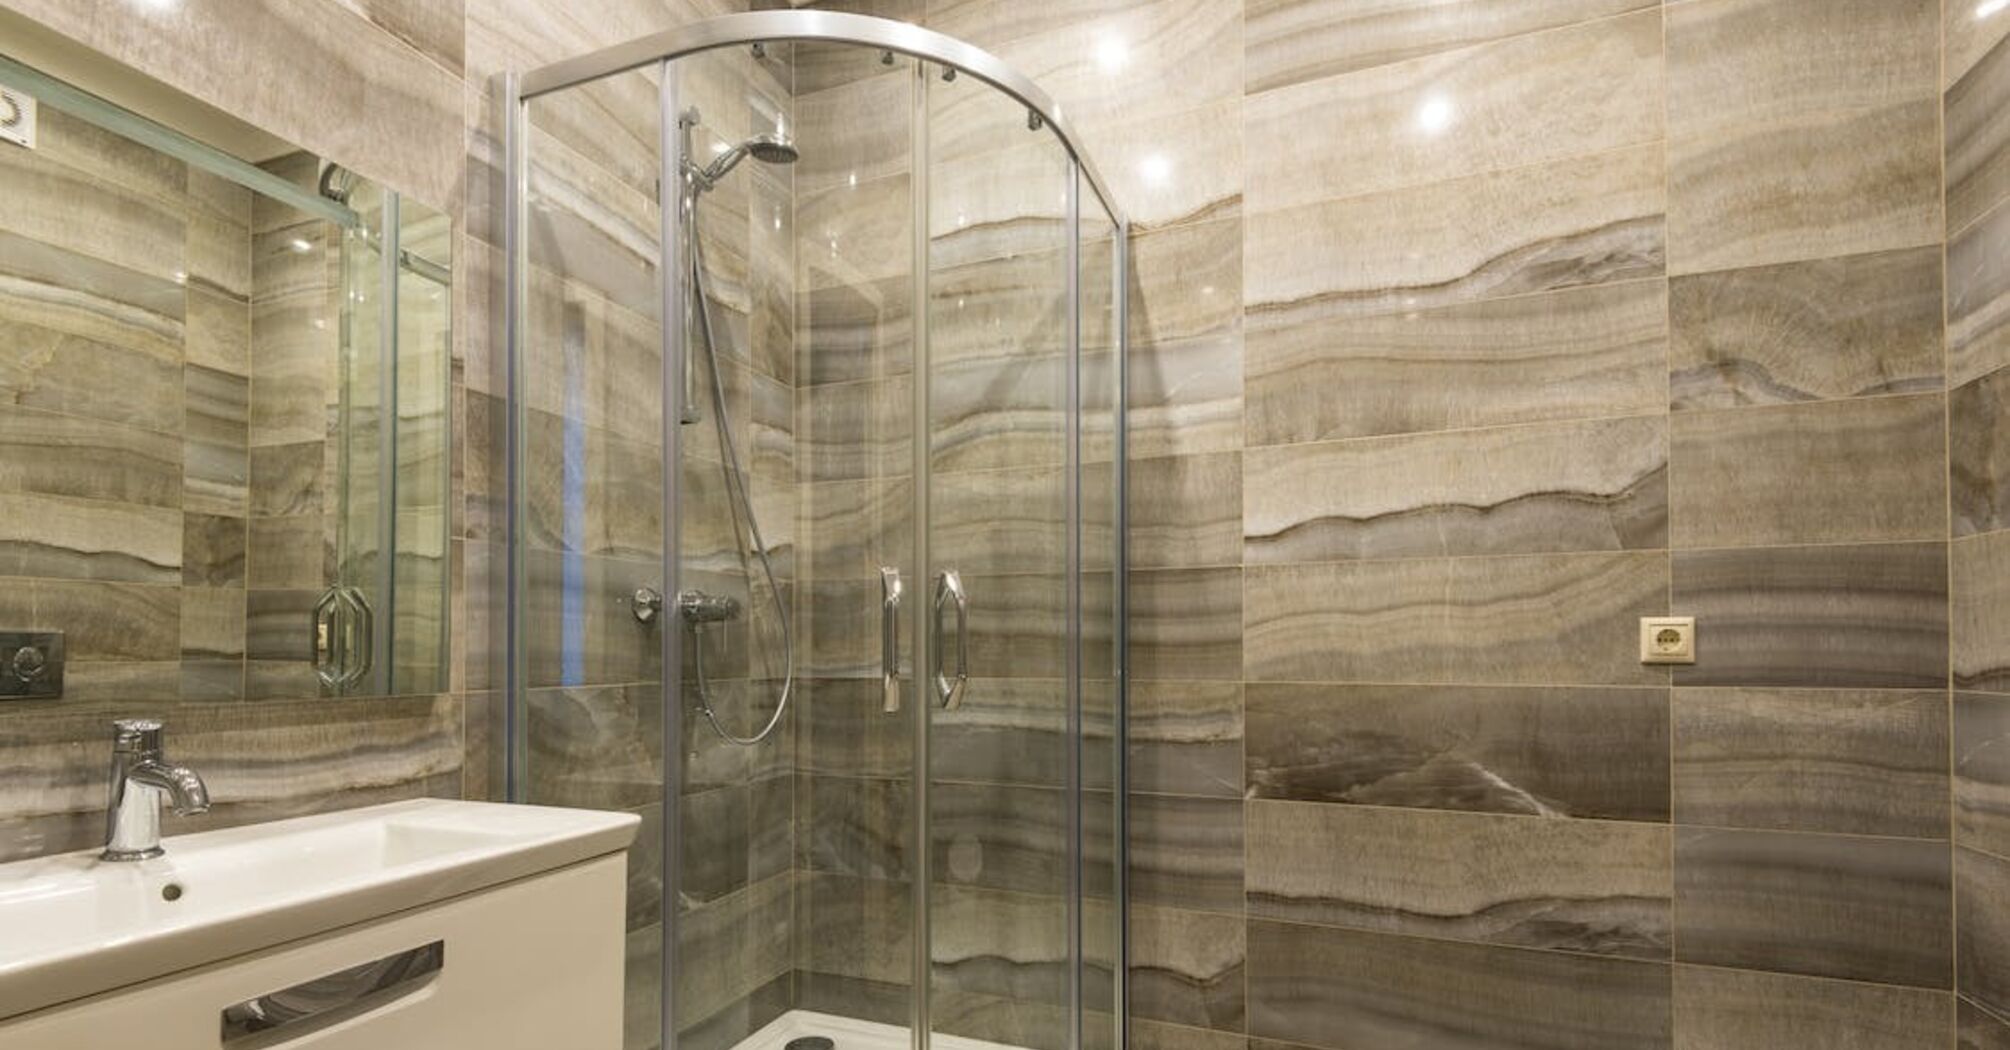 Переваги та недоліки душових кабін: що потрібно враховувати 